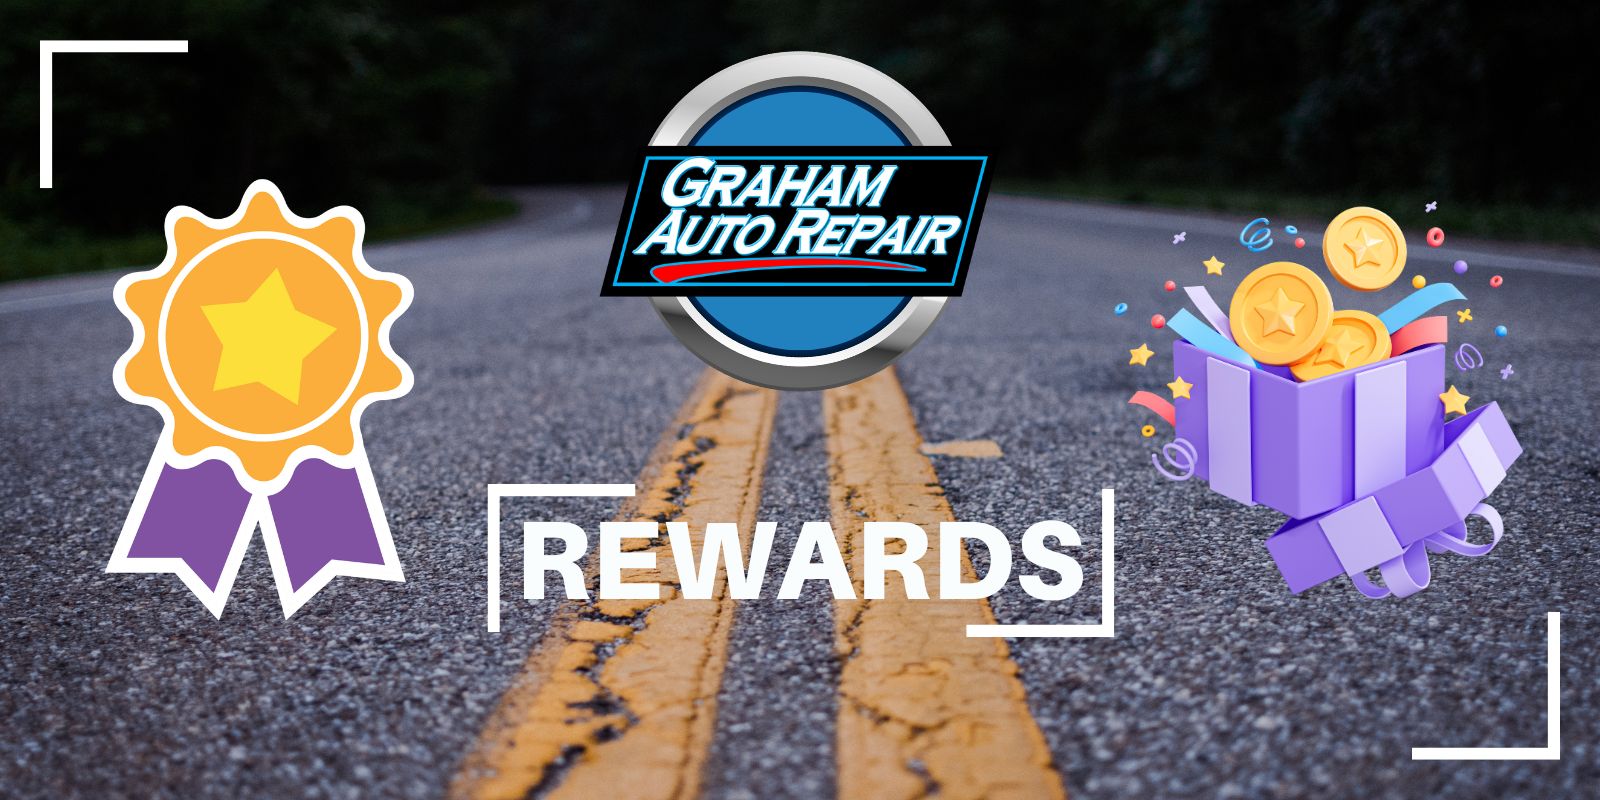 Graham Auto Repair Rewards Program